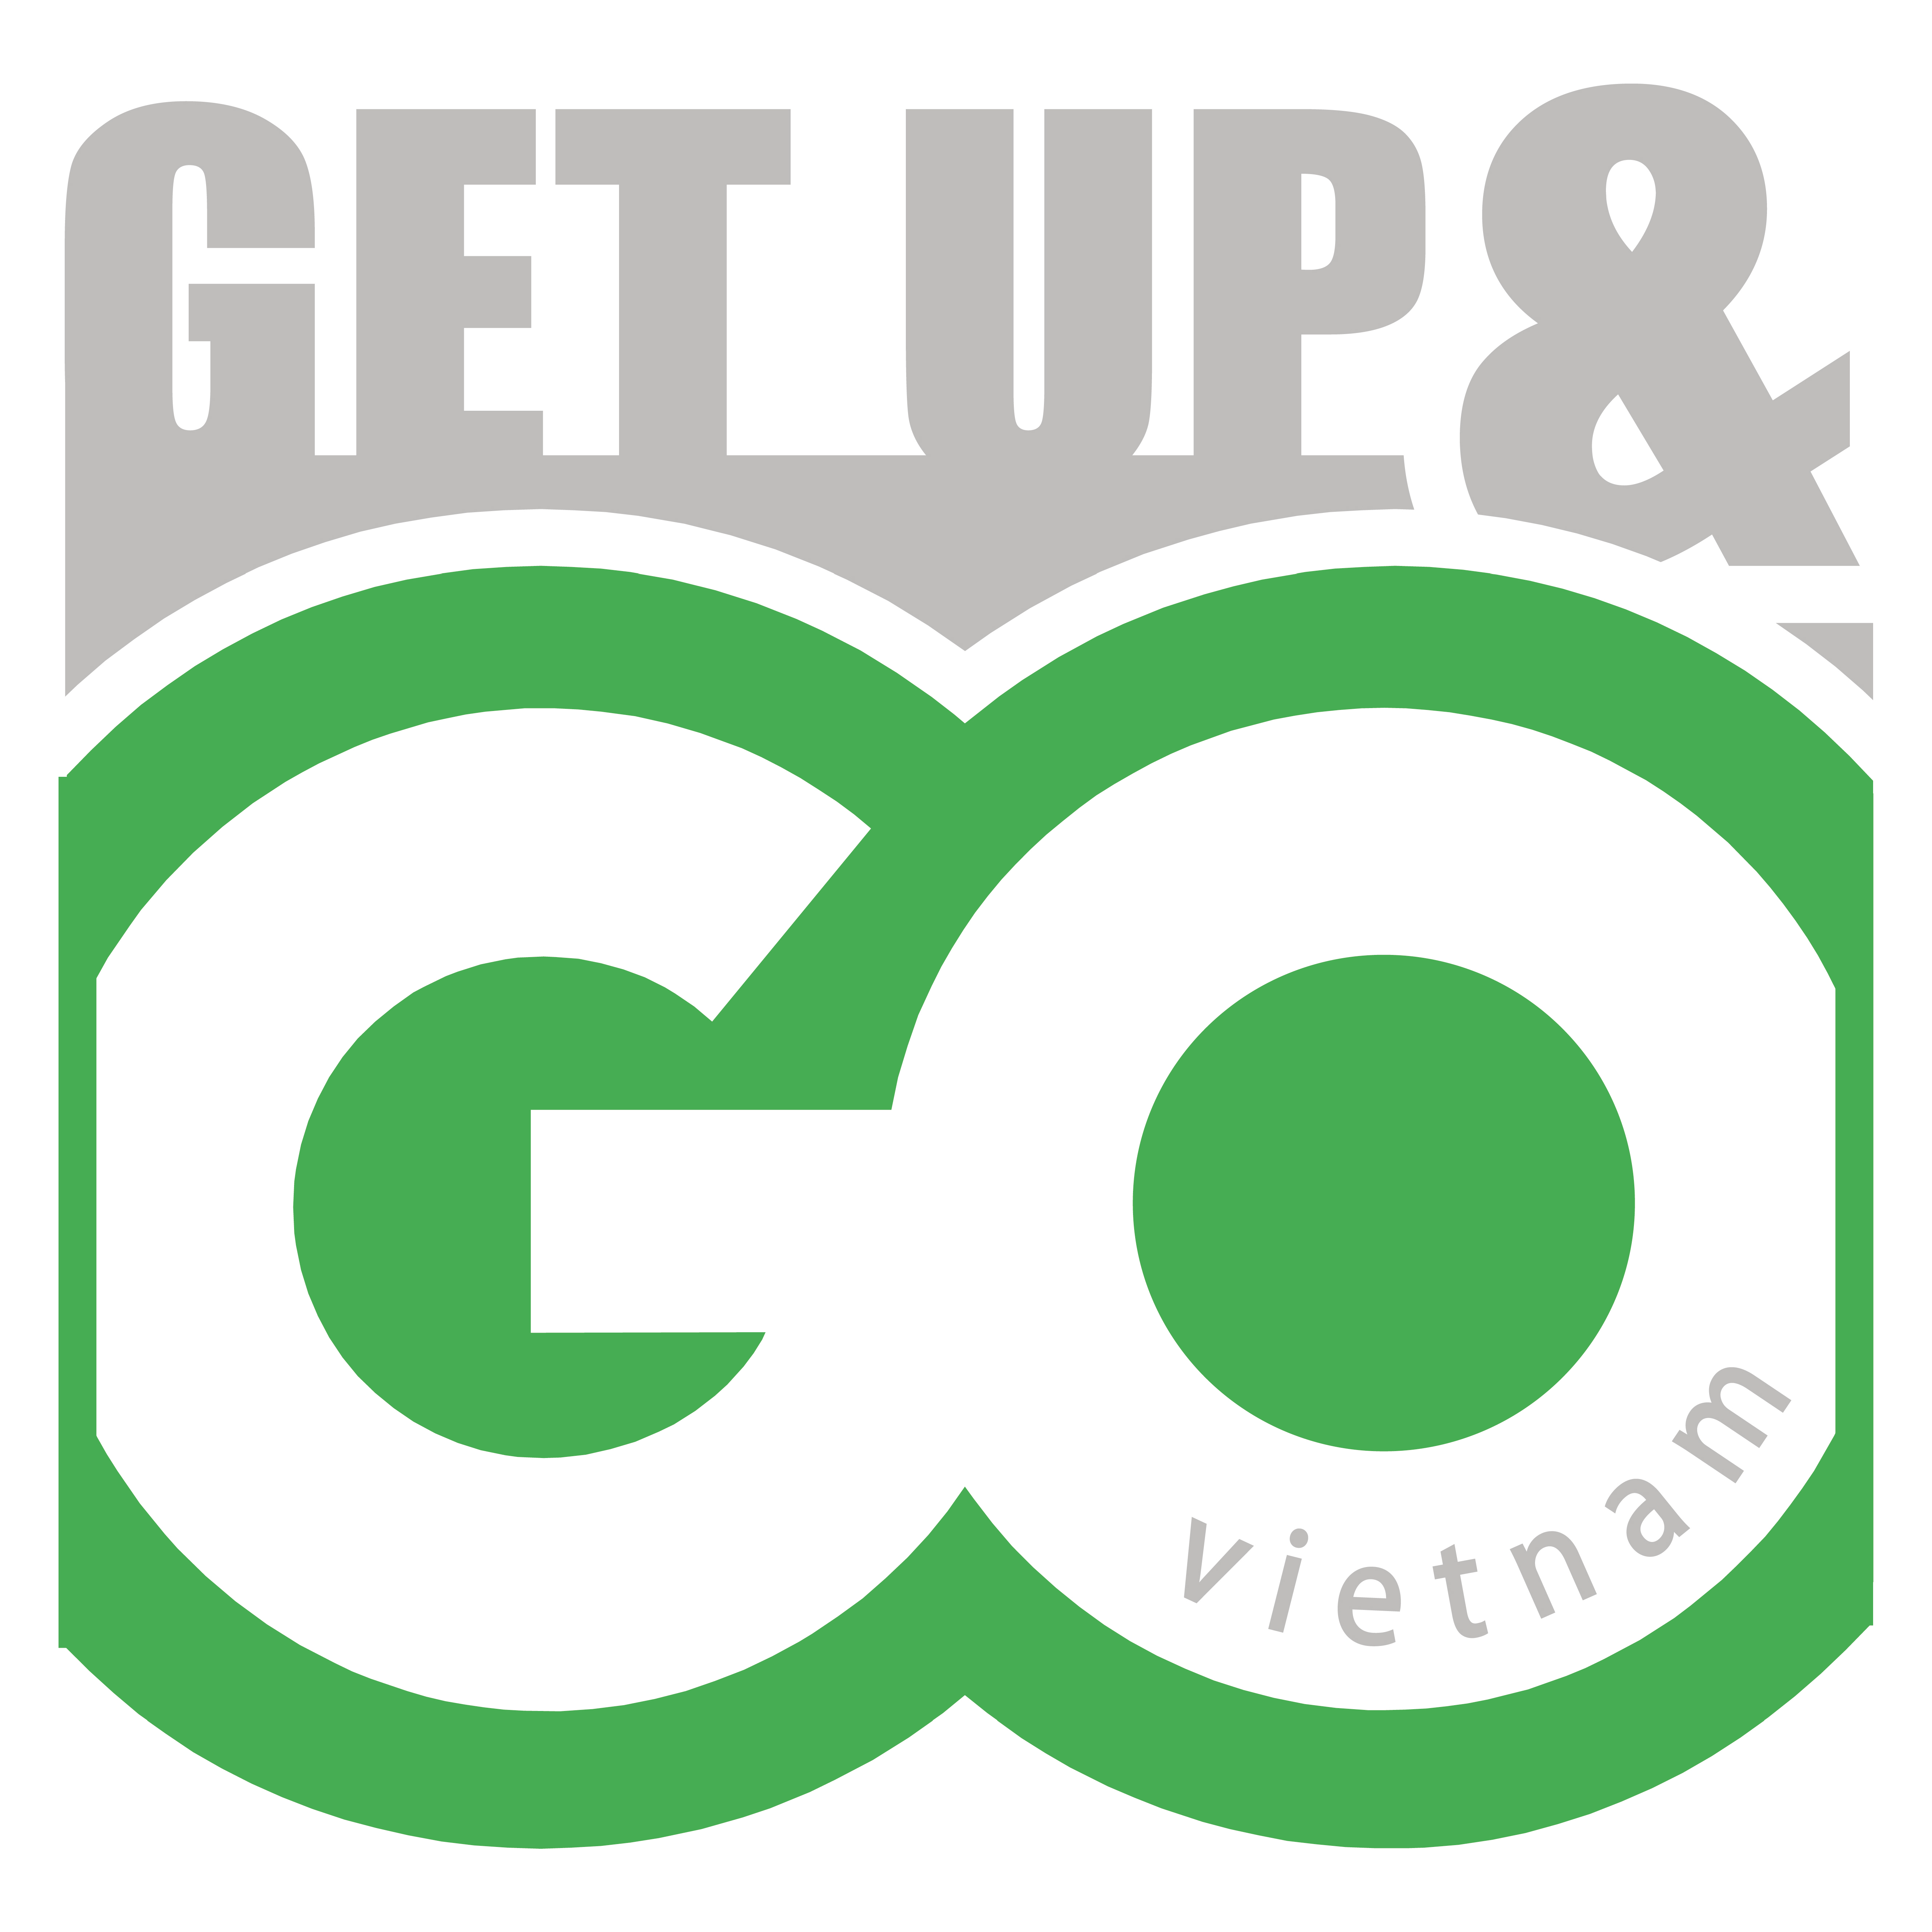 Get up & Go Vietnam